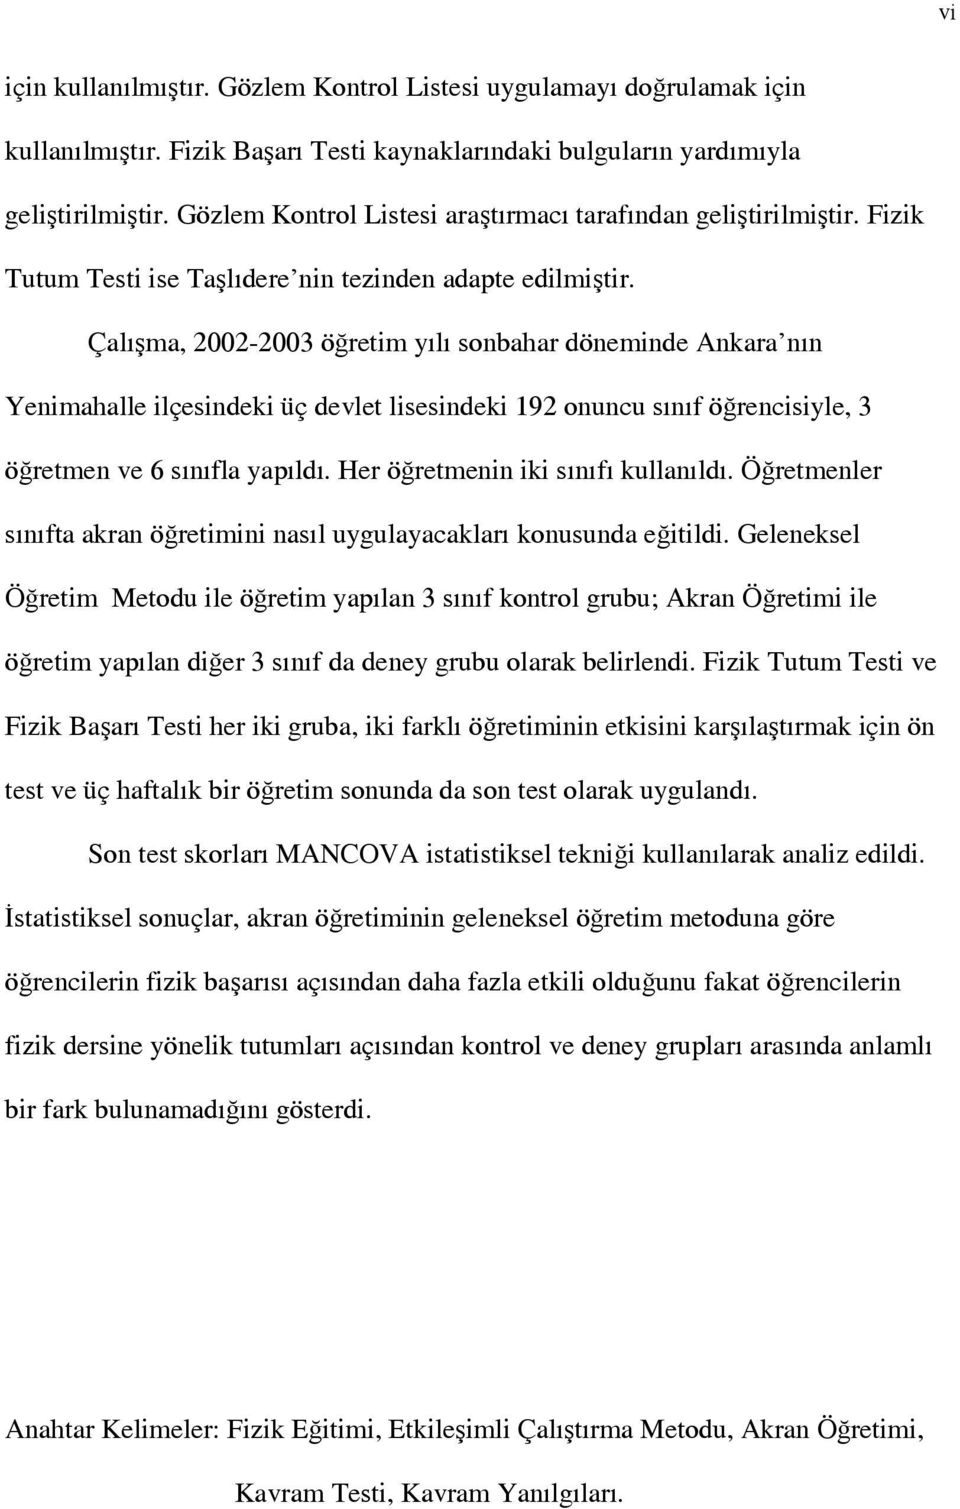 Çalışma, 2002-2003 öğretim yılı sonbahar döneminde Ankara nın Yenimahalle ilçesindeki üç devlet lisesindeki 192 onuncu sınıf öğrencisiyle, 3 öğretmen ve 6 sınıfla yapıldı.